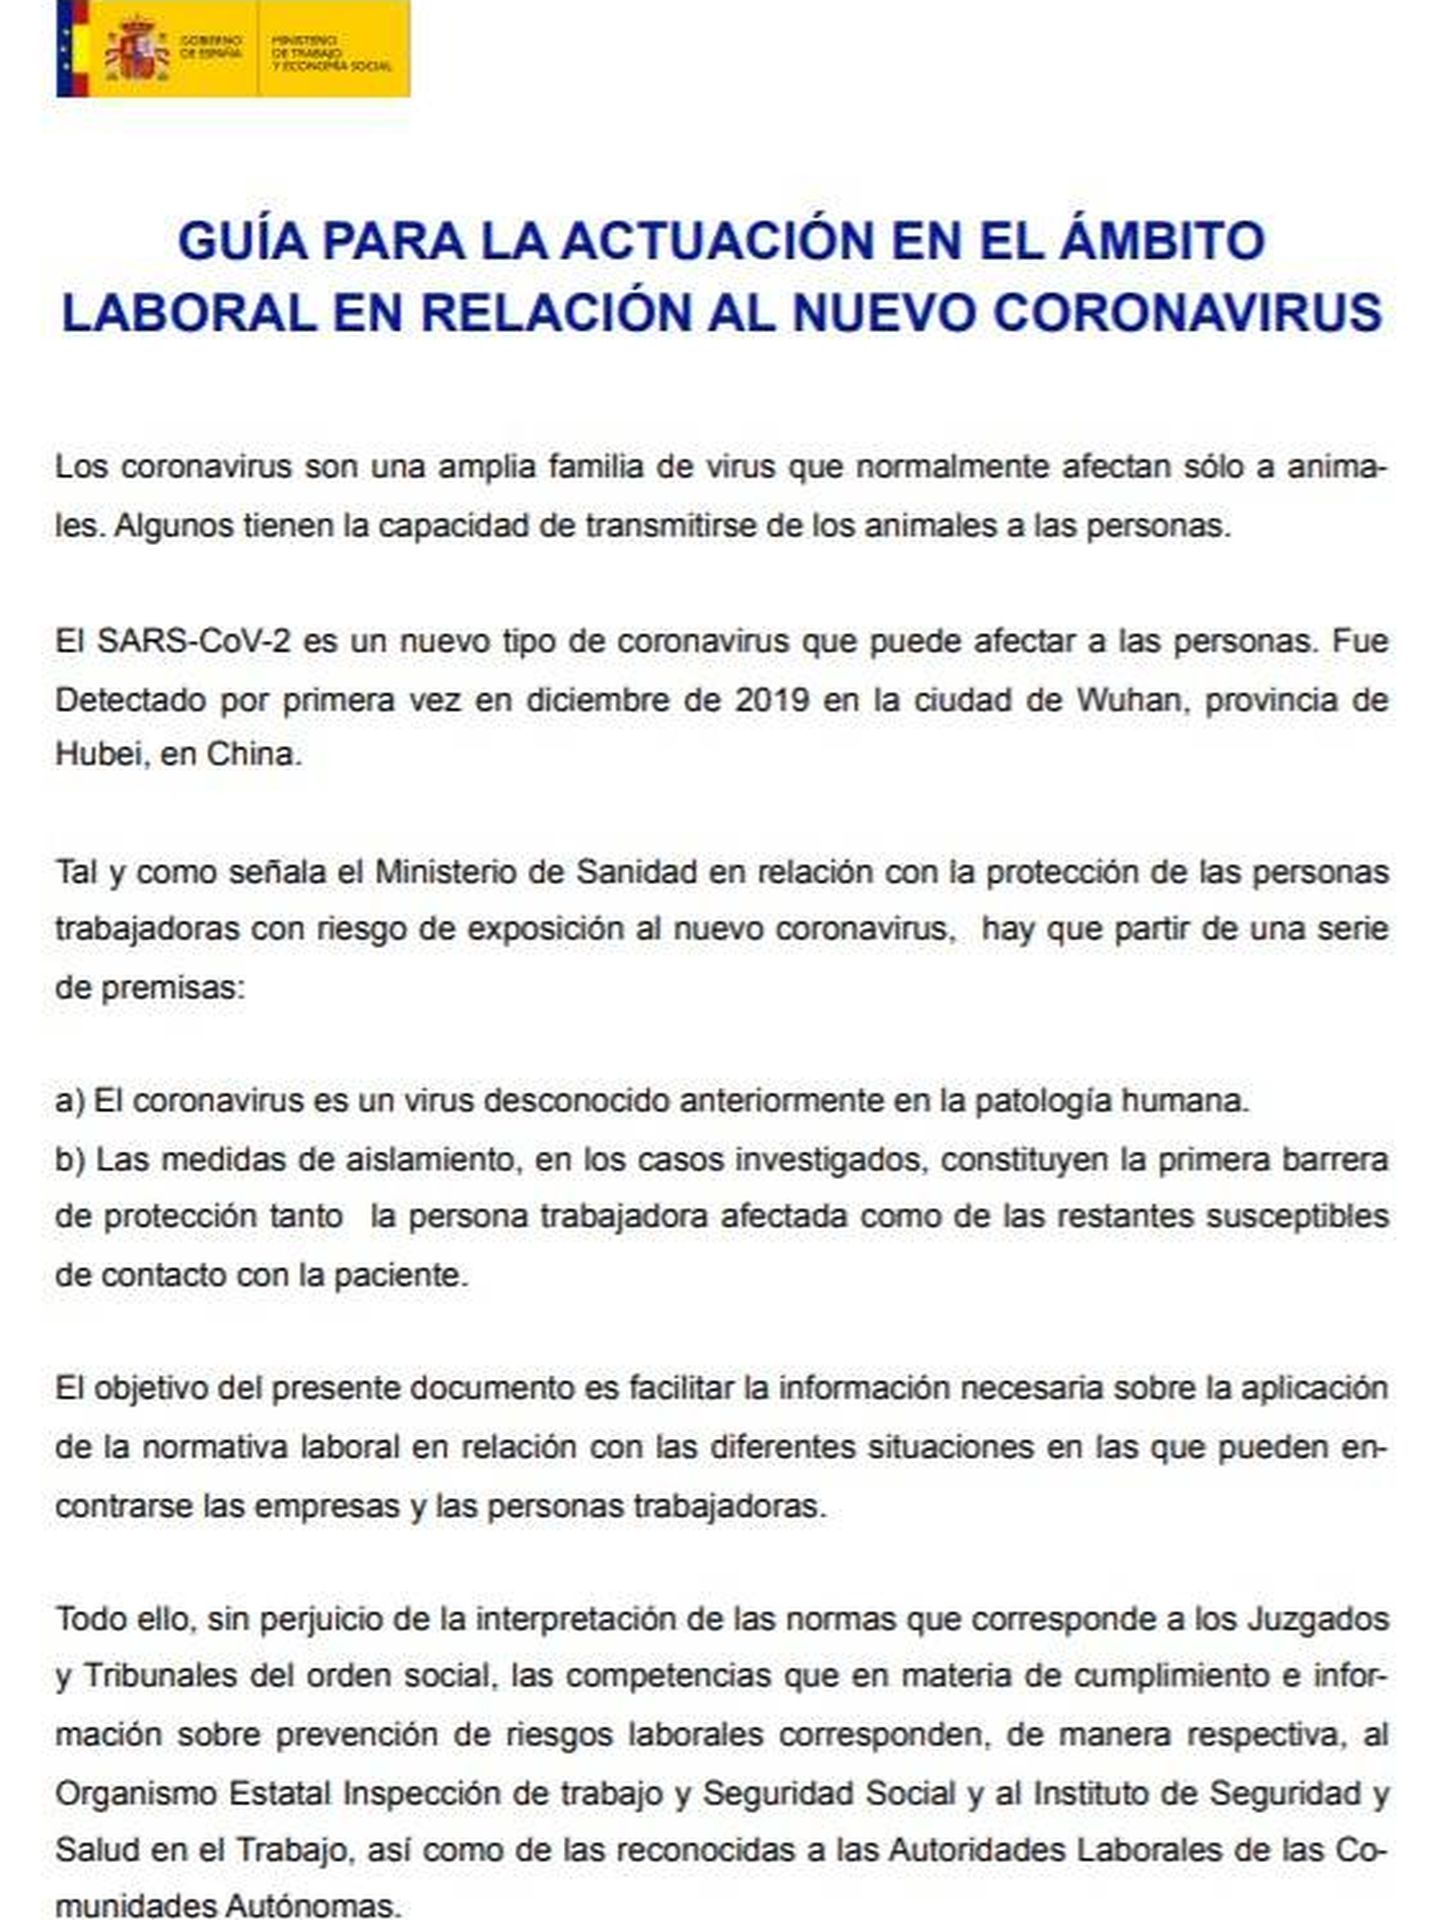 Guía de actuación frente al coronavirus publicada por el Ministerio de Trabajo y Economía Social.